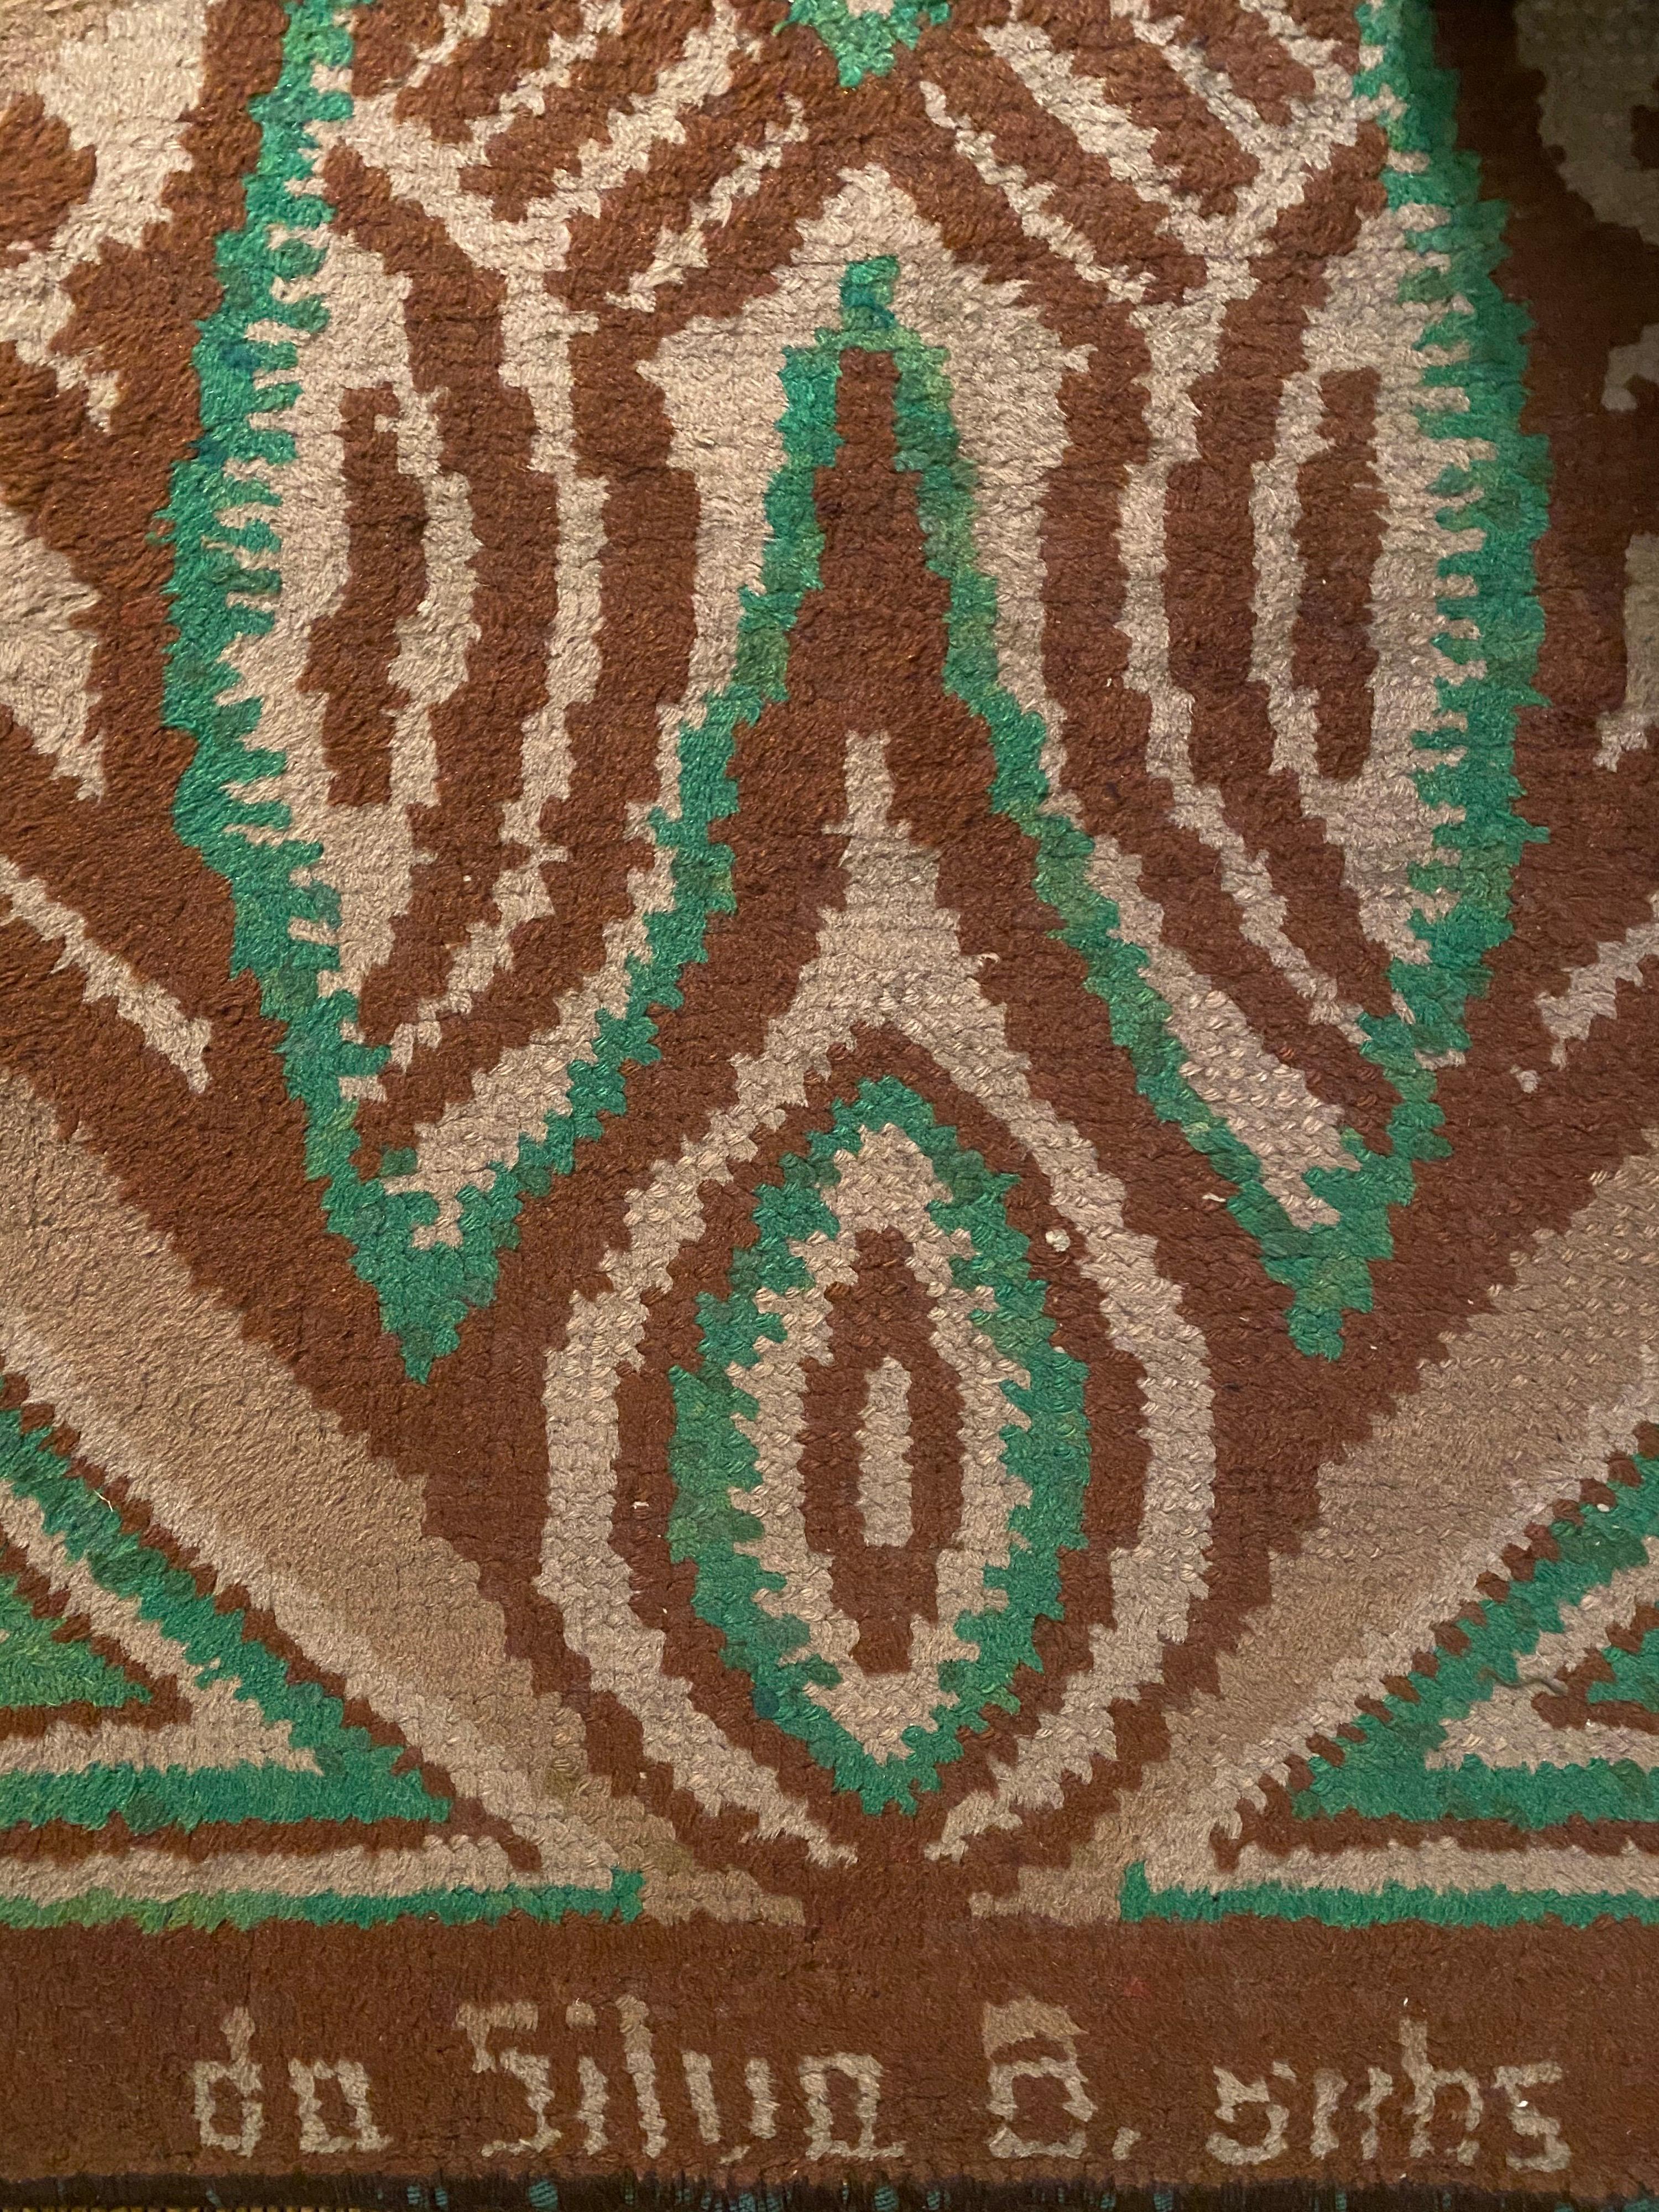 Tapis rectangulaire en laine à motif géométrique d'inspiration africaine conçu par Ivan da Silva Bruhns vers 1930. Le tapis présente la signature de l'artiste en bas qui se lit 